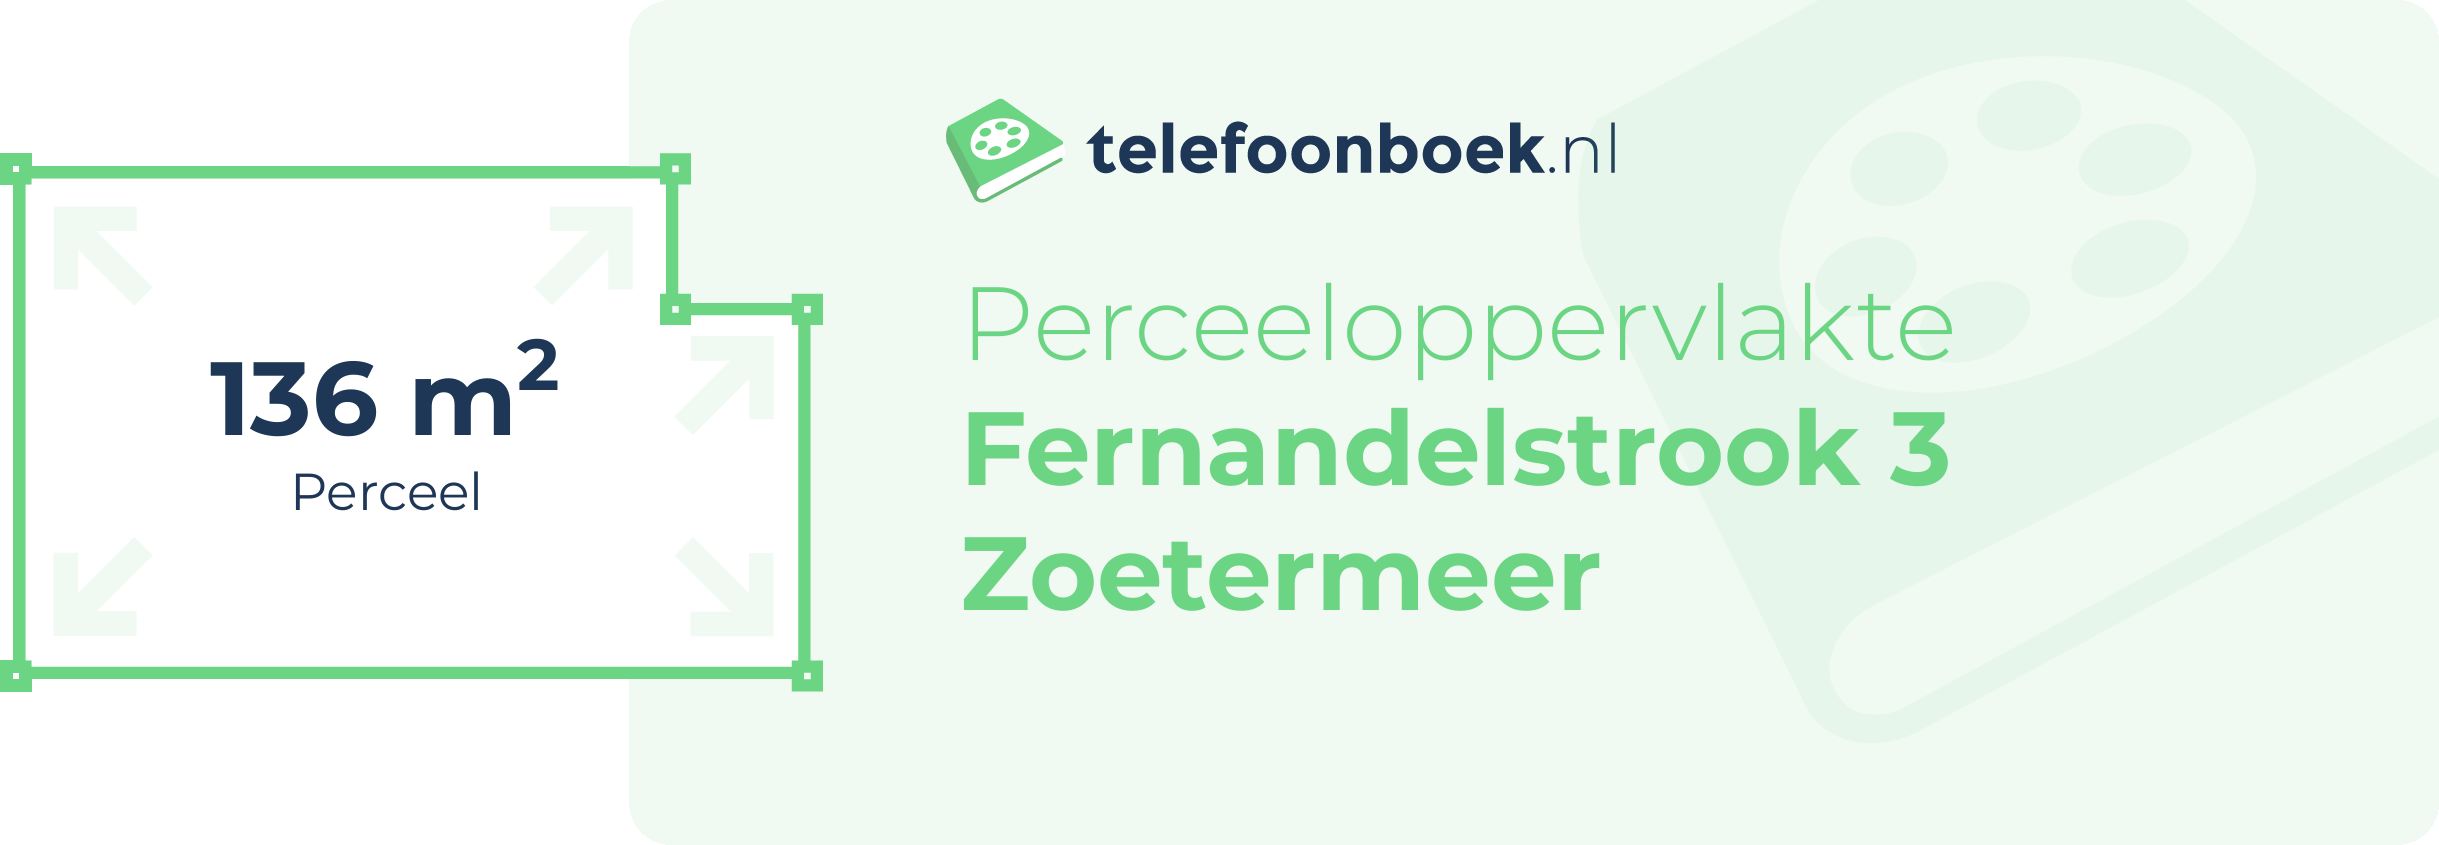 Perceeloppervlakte Fernandelstrook 3 Zoetermeer